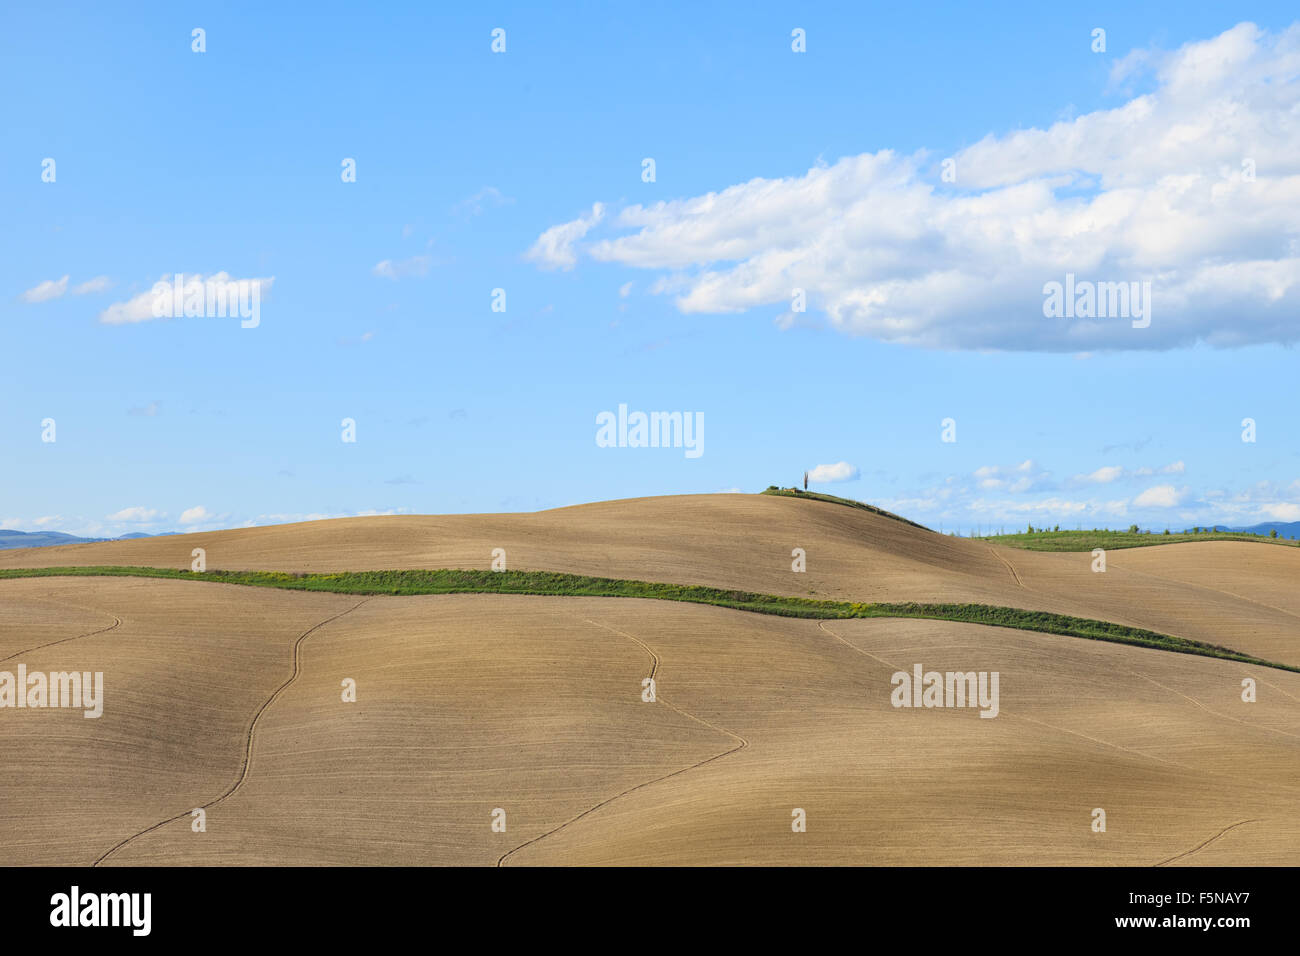 Toskana, wellige gepflügtes Feld, ländlichen Landschaft in Crete Senesi, Italien, Europa. Subtile Schatten, blauen Wolkenhimmel und kleiner Baum Stockfoto